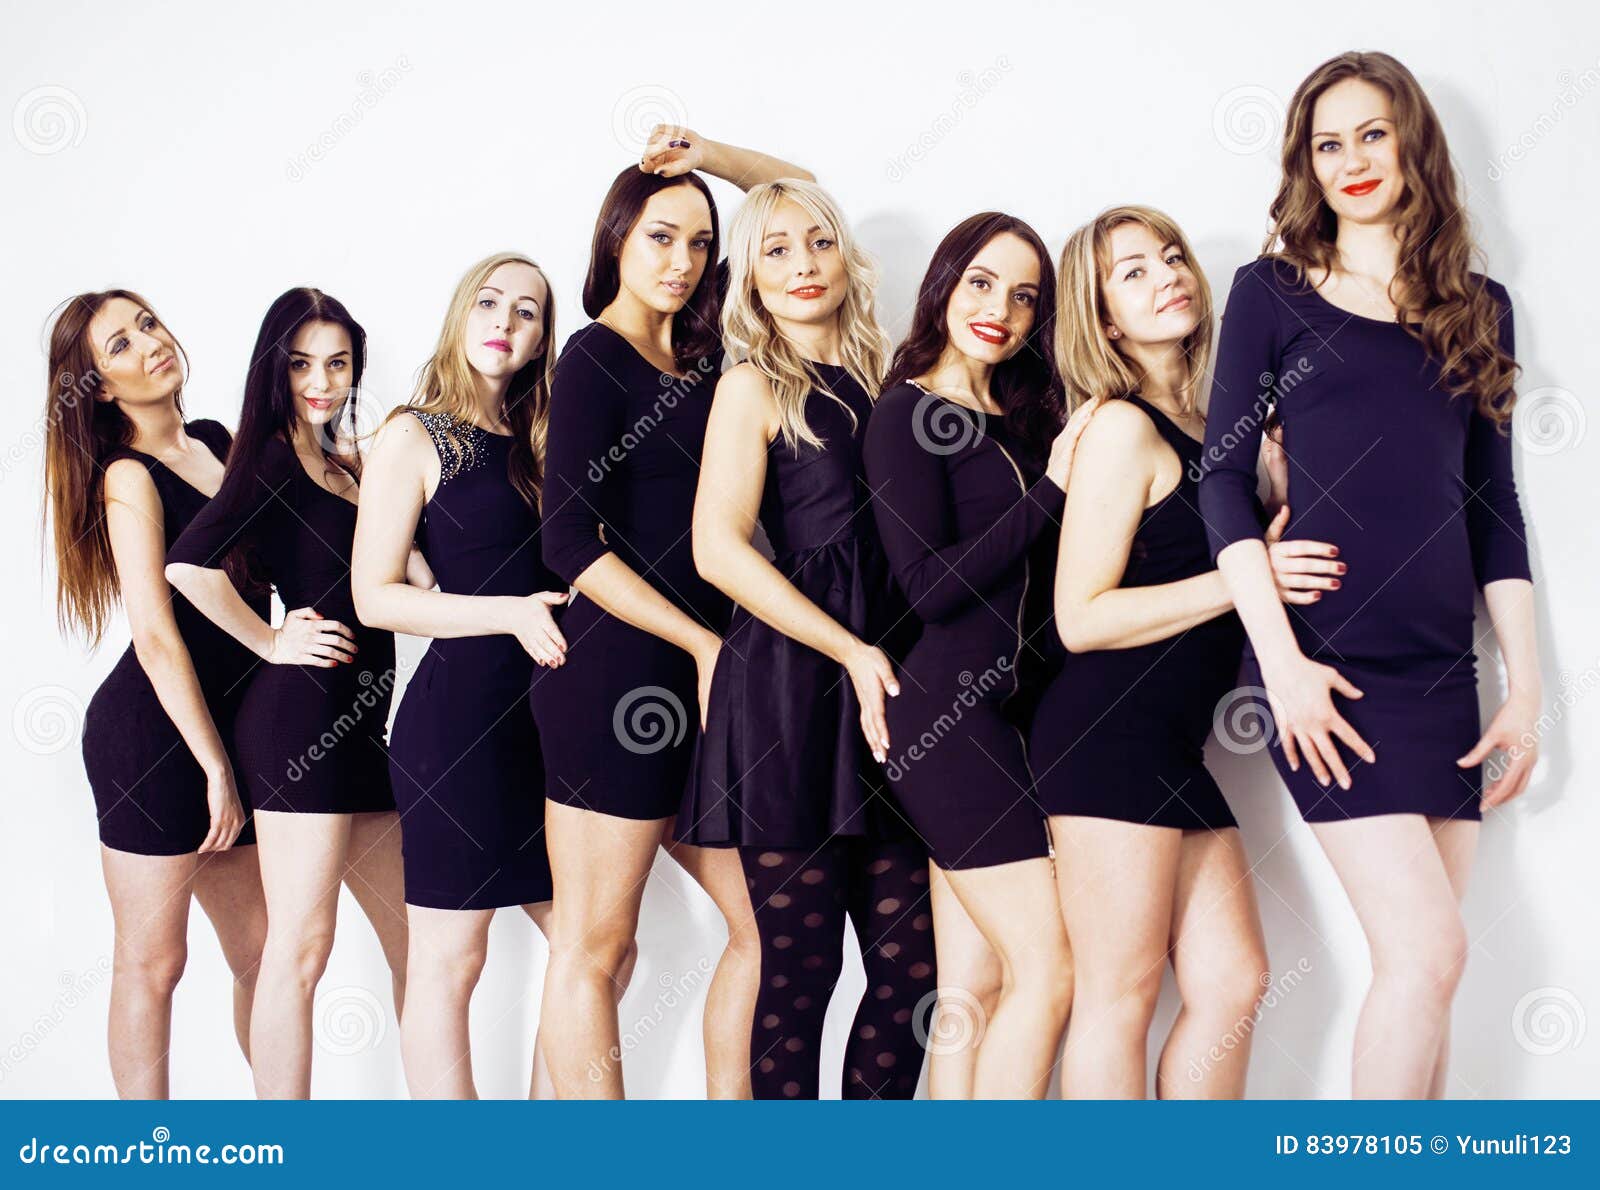 Many Diverse Women in Line, Wearing Fancy Little Black Dresses, Stock ...